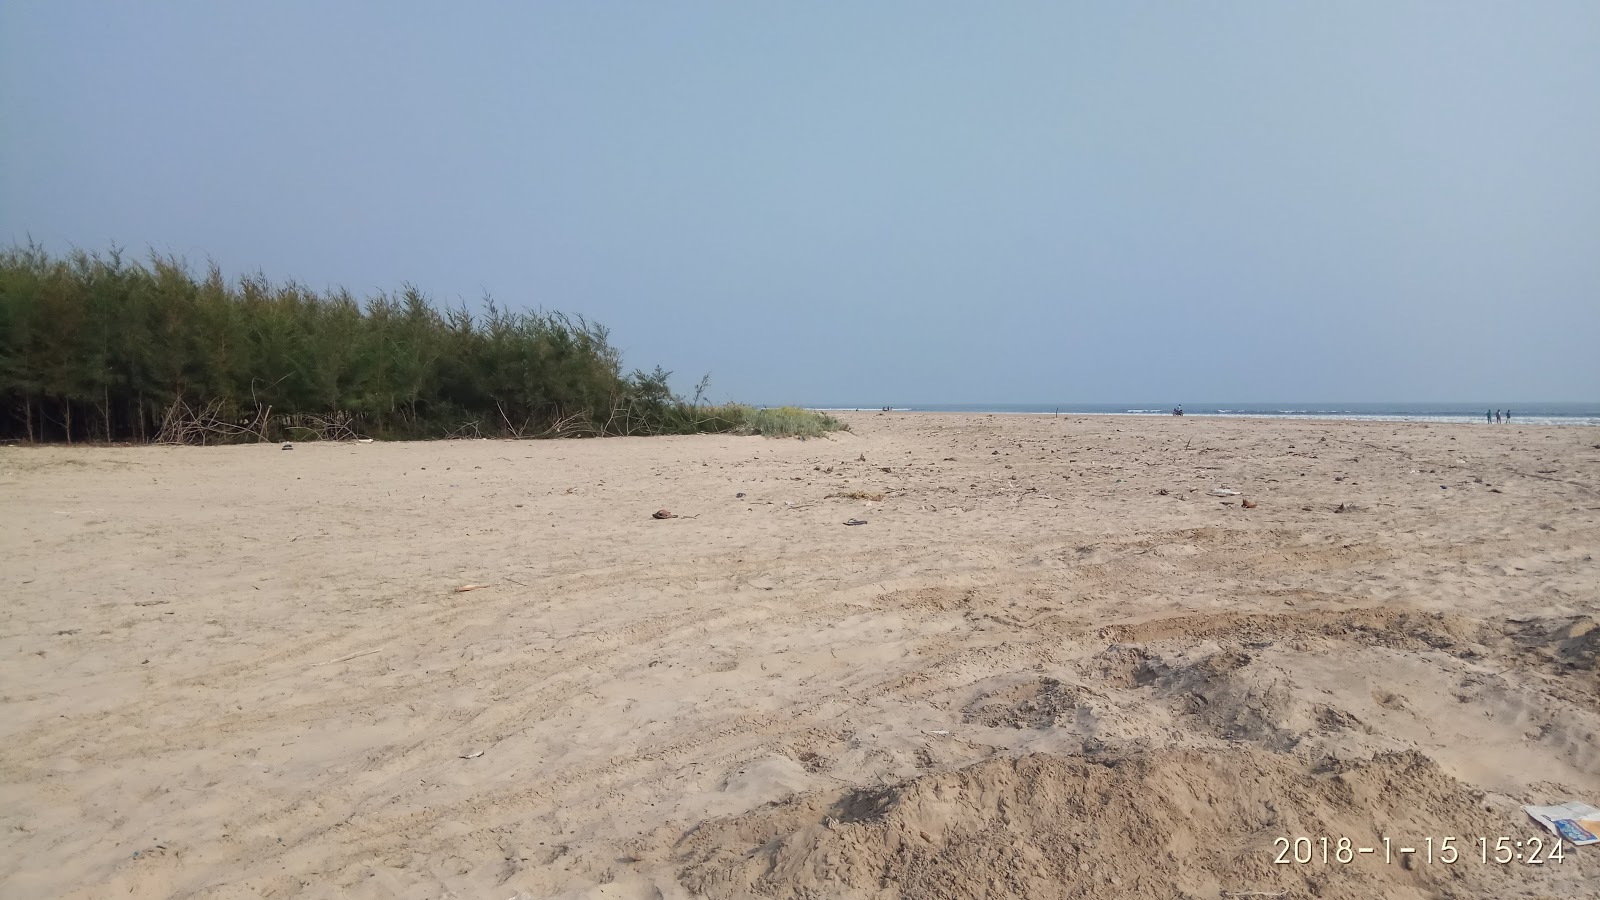 Fotografie cu Gollapalem Beach, Krishna District cu o suprafață de apa pură turcoaz